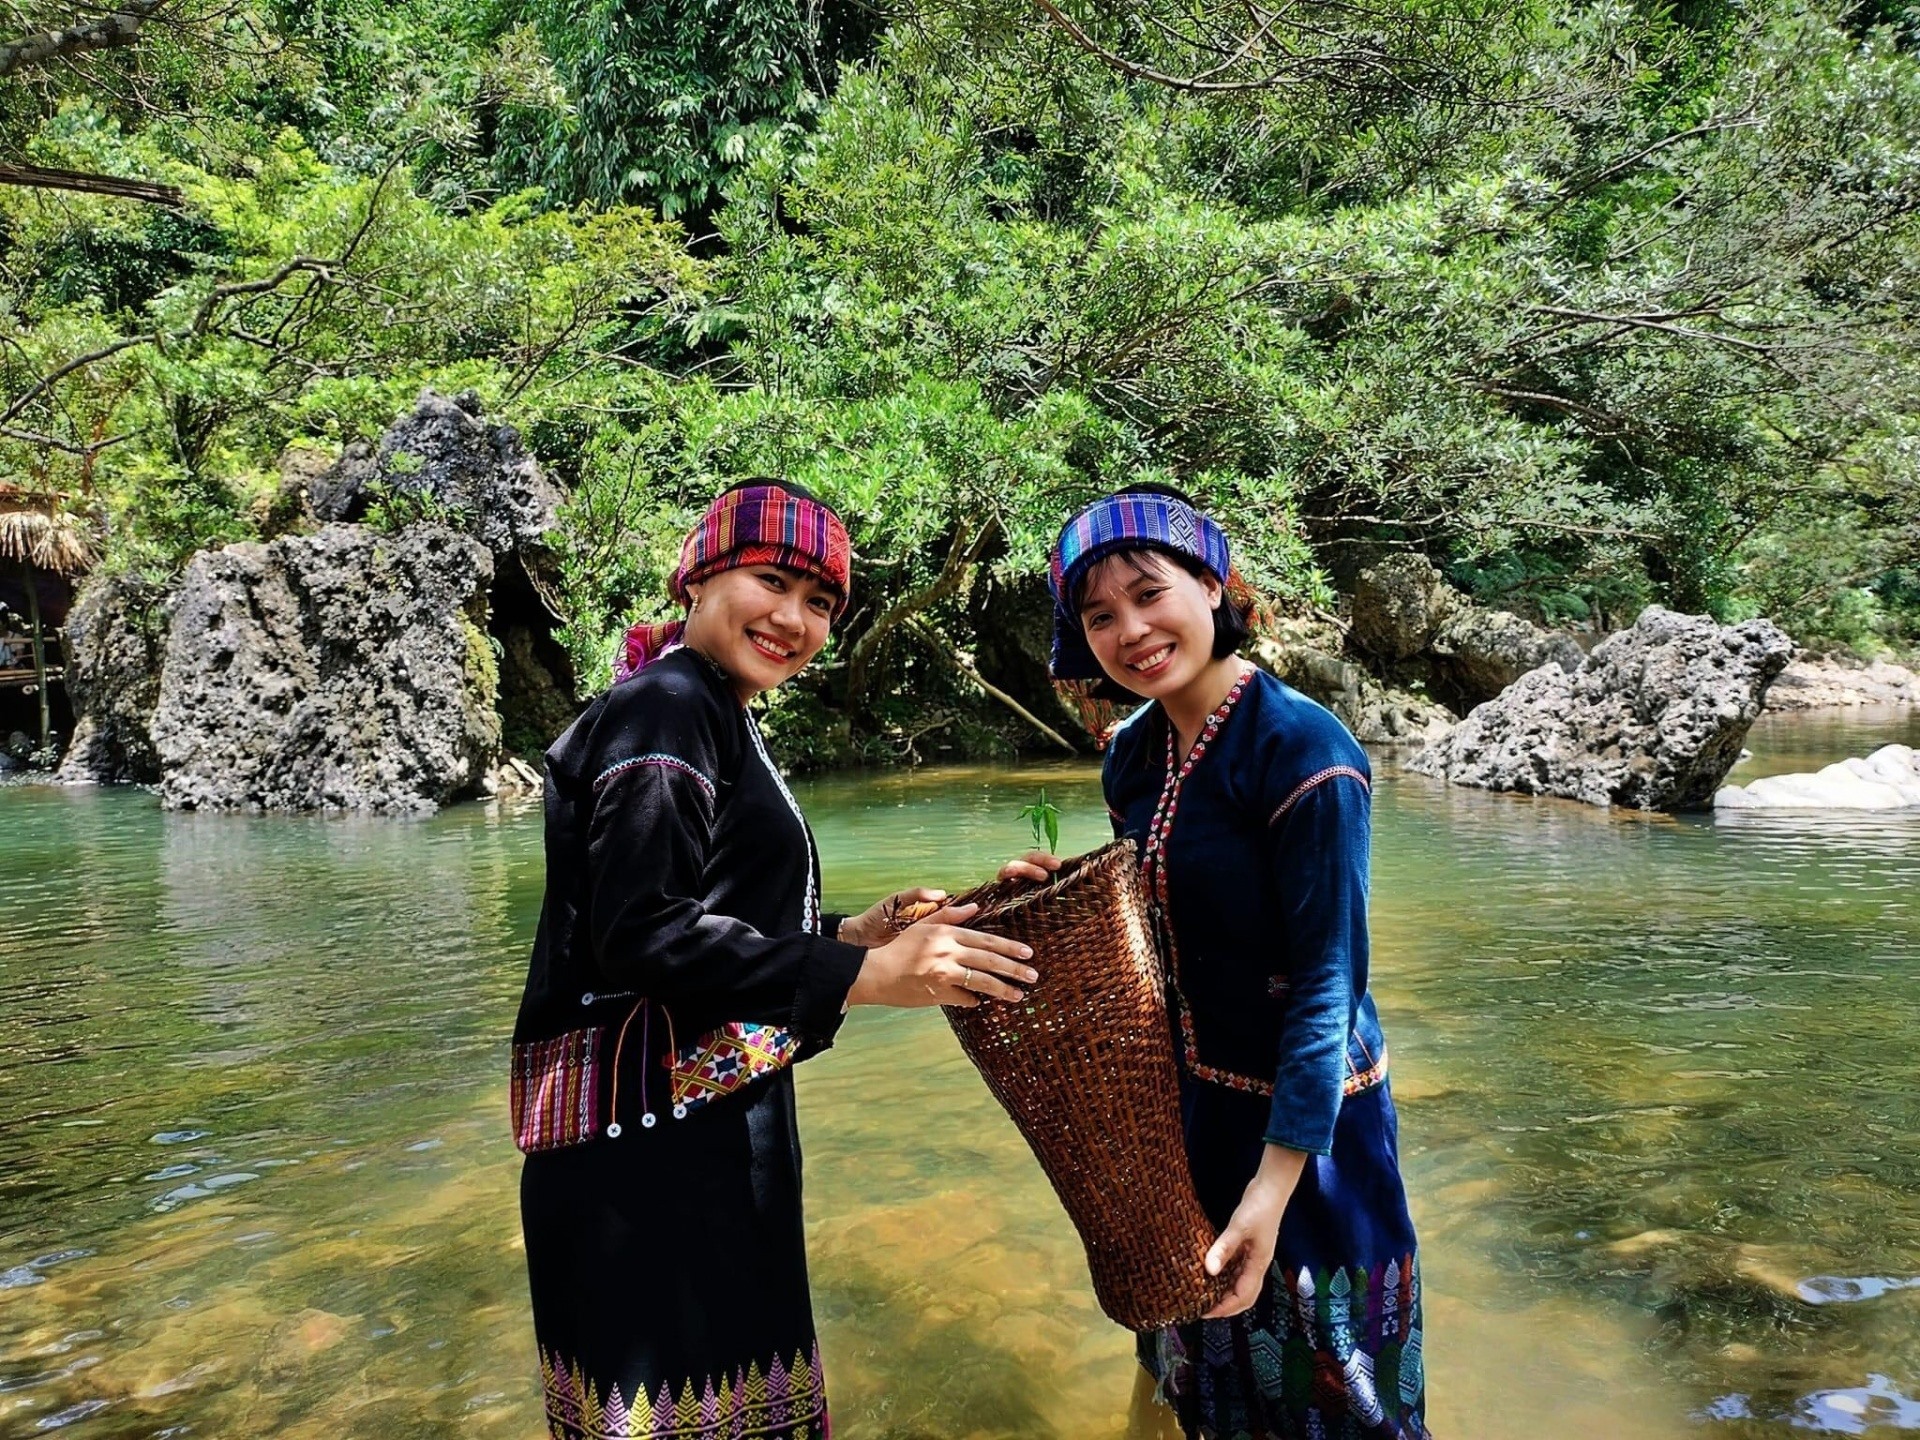 Du khách thích thú khi được trải nghiệm bắt cá suối trong bộ trang hục truyền thống người Vân Kiều ở điểm du lịch cộng đồng suối A Lao, xã Tà Long, huyện Đakrông.